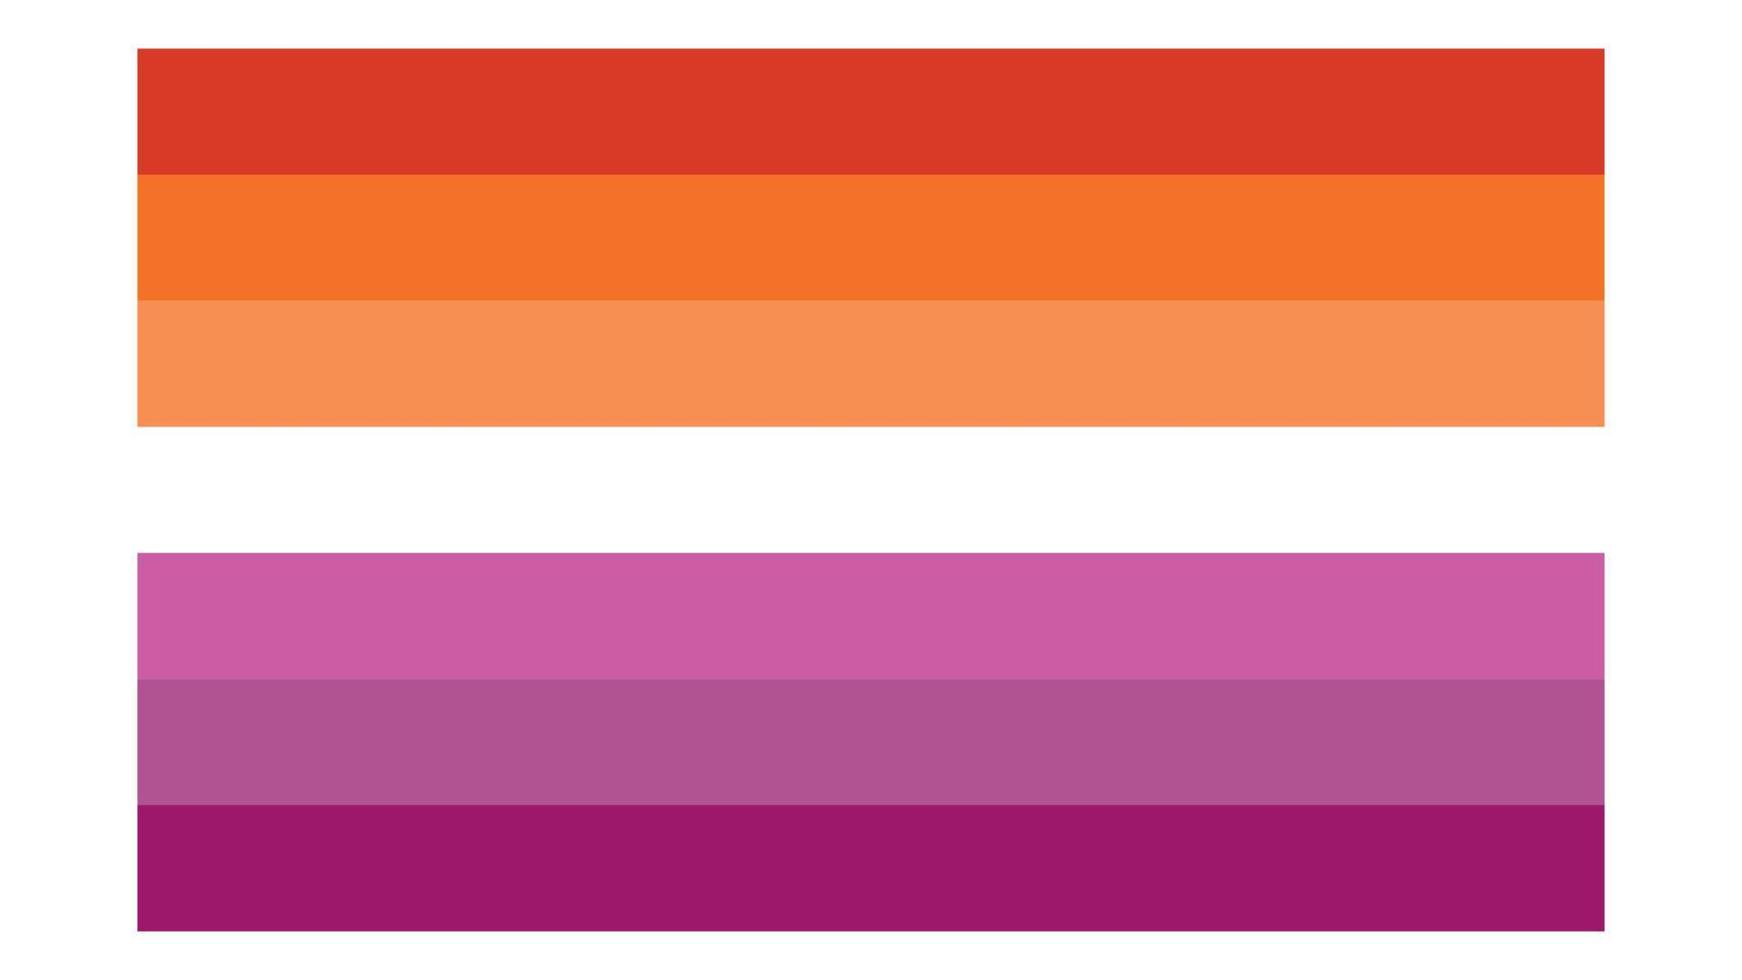 lesbica bandiera illustrazione. lesbica orgoglio bandiera icona vettore